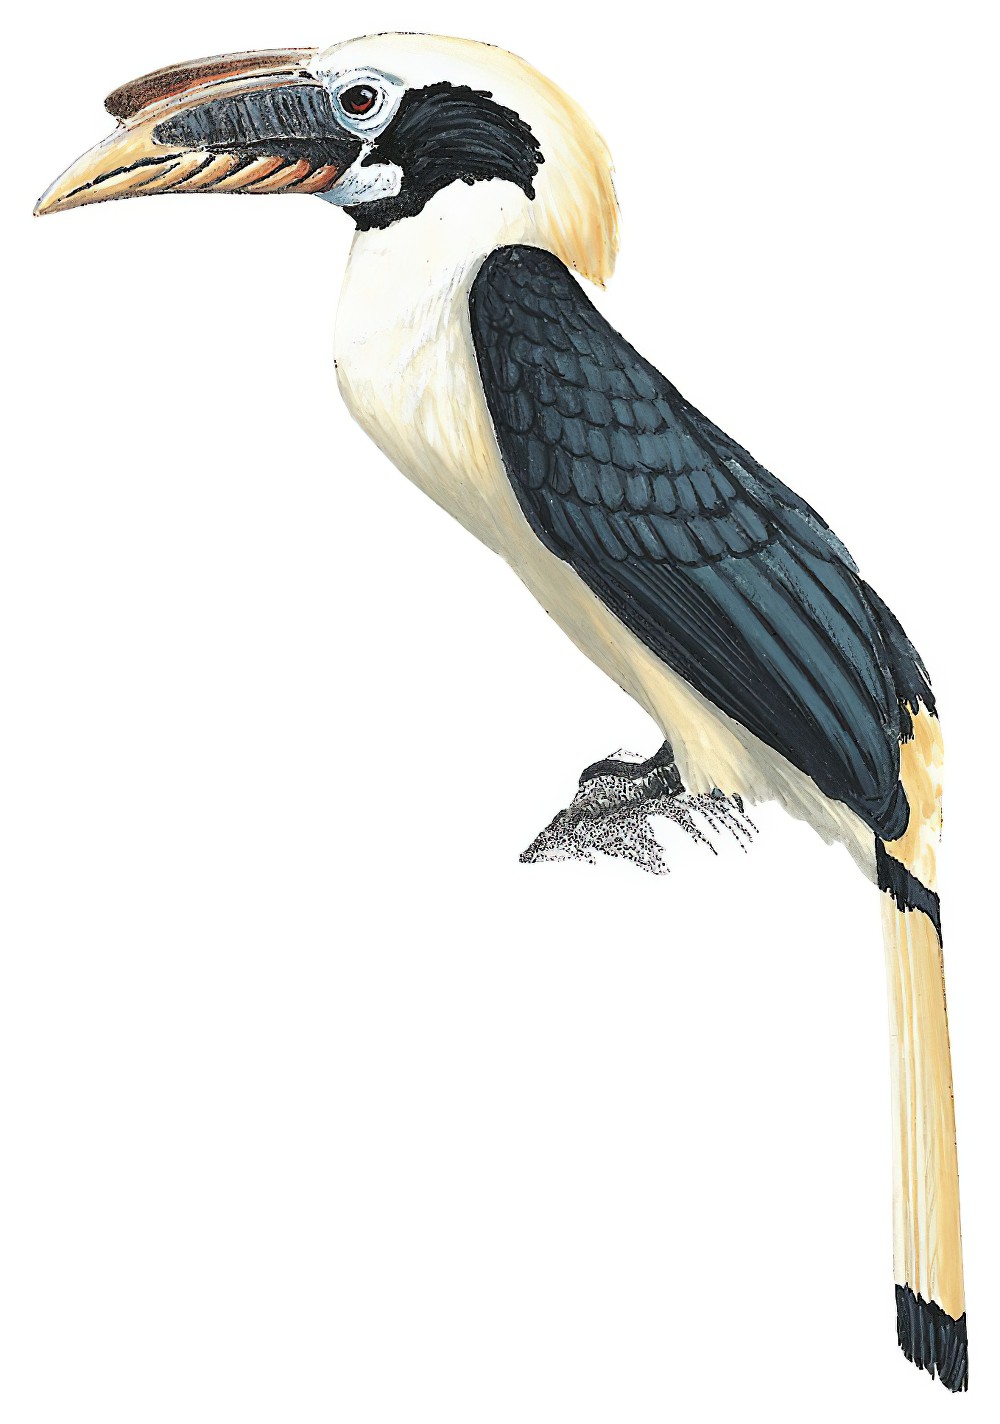 萨岛犀鸟 / Samar Hornbill / Penelopides samarensis